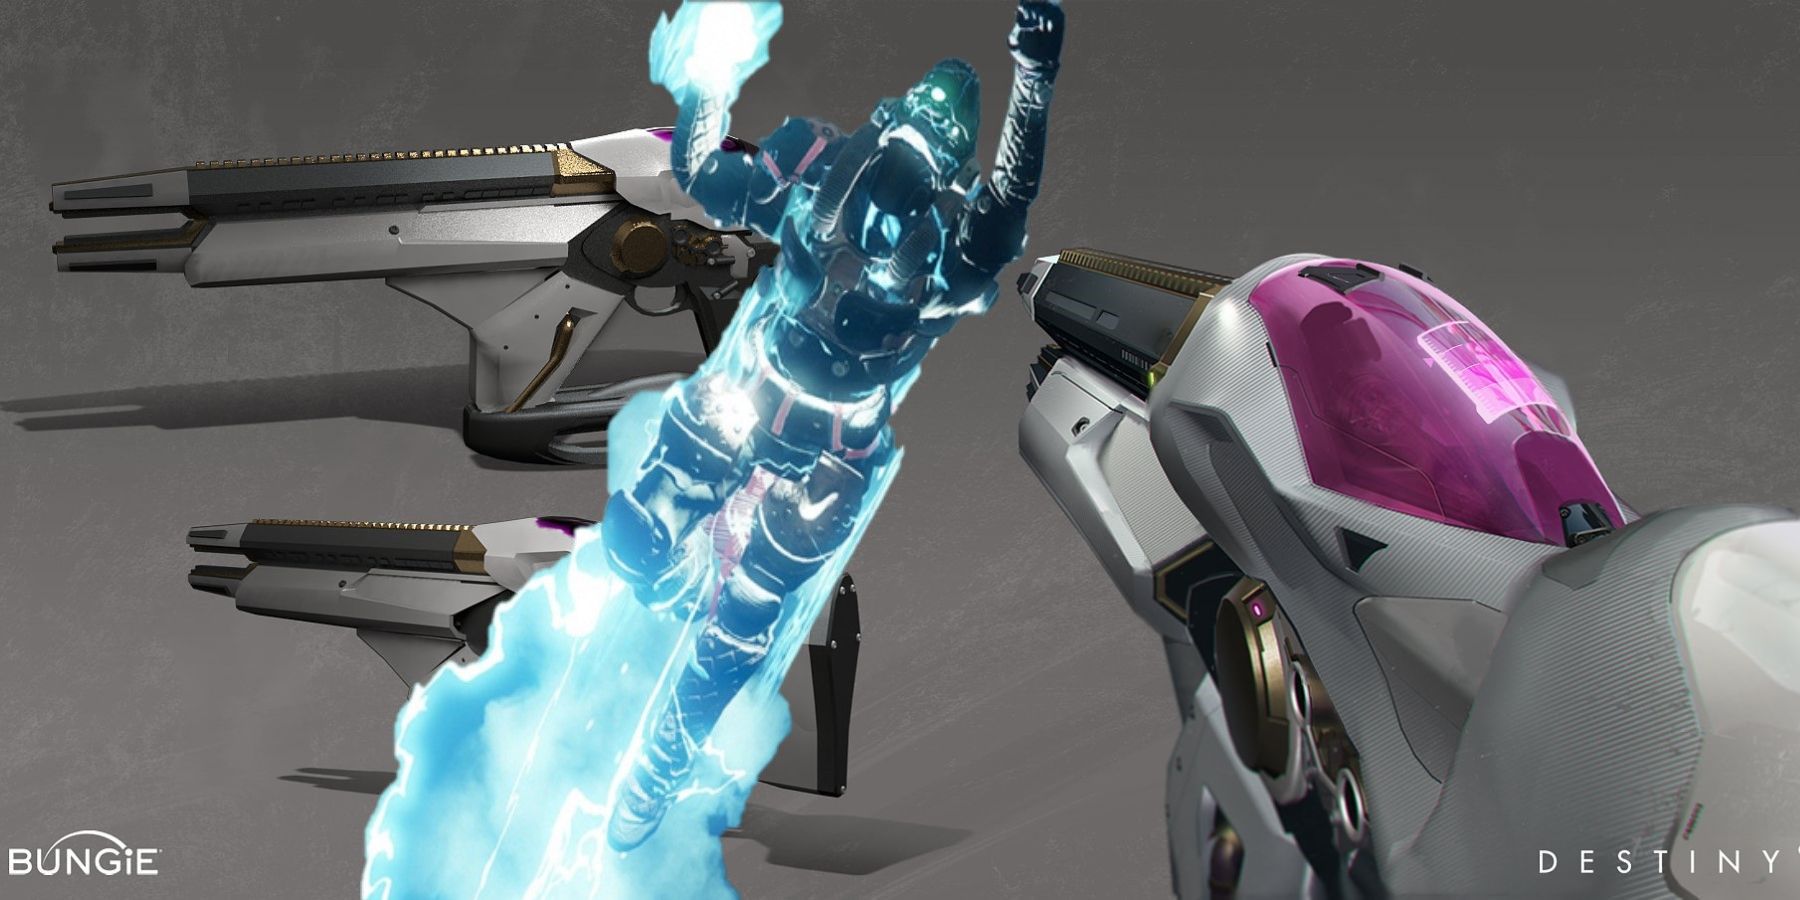 يمكن للاعبين Destiny 2 الحصول على لاعبين خارقين لانهائيين في PVP مع خلل Telesto جديد